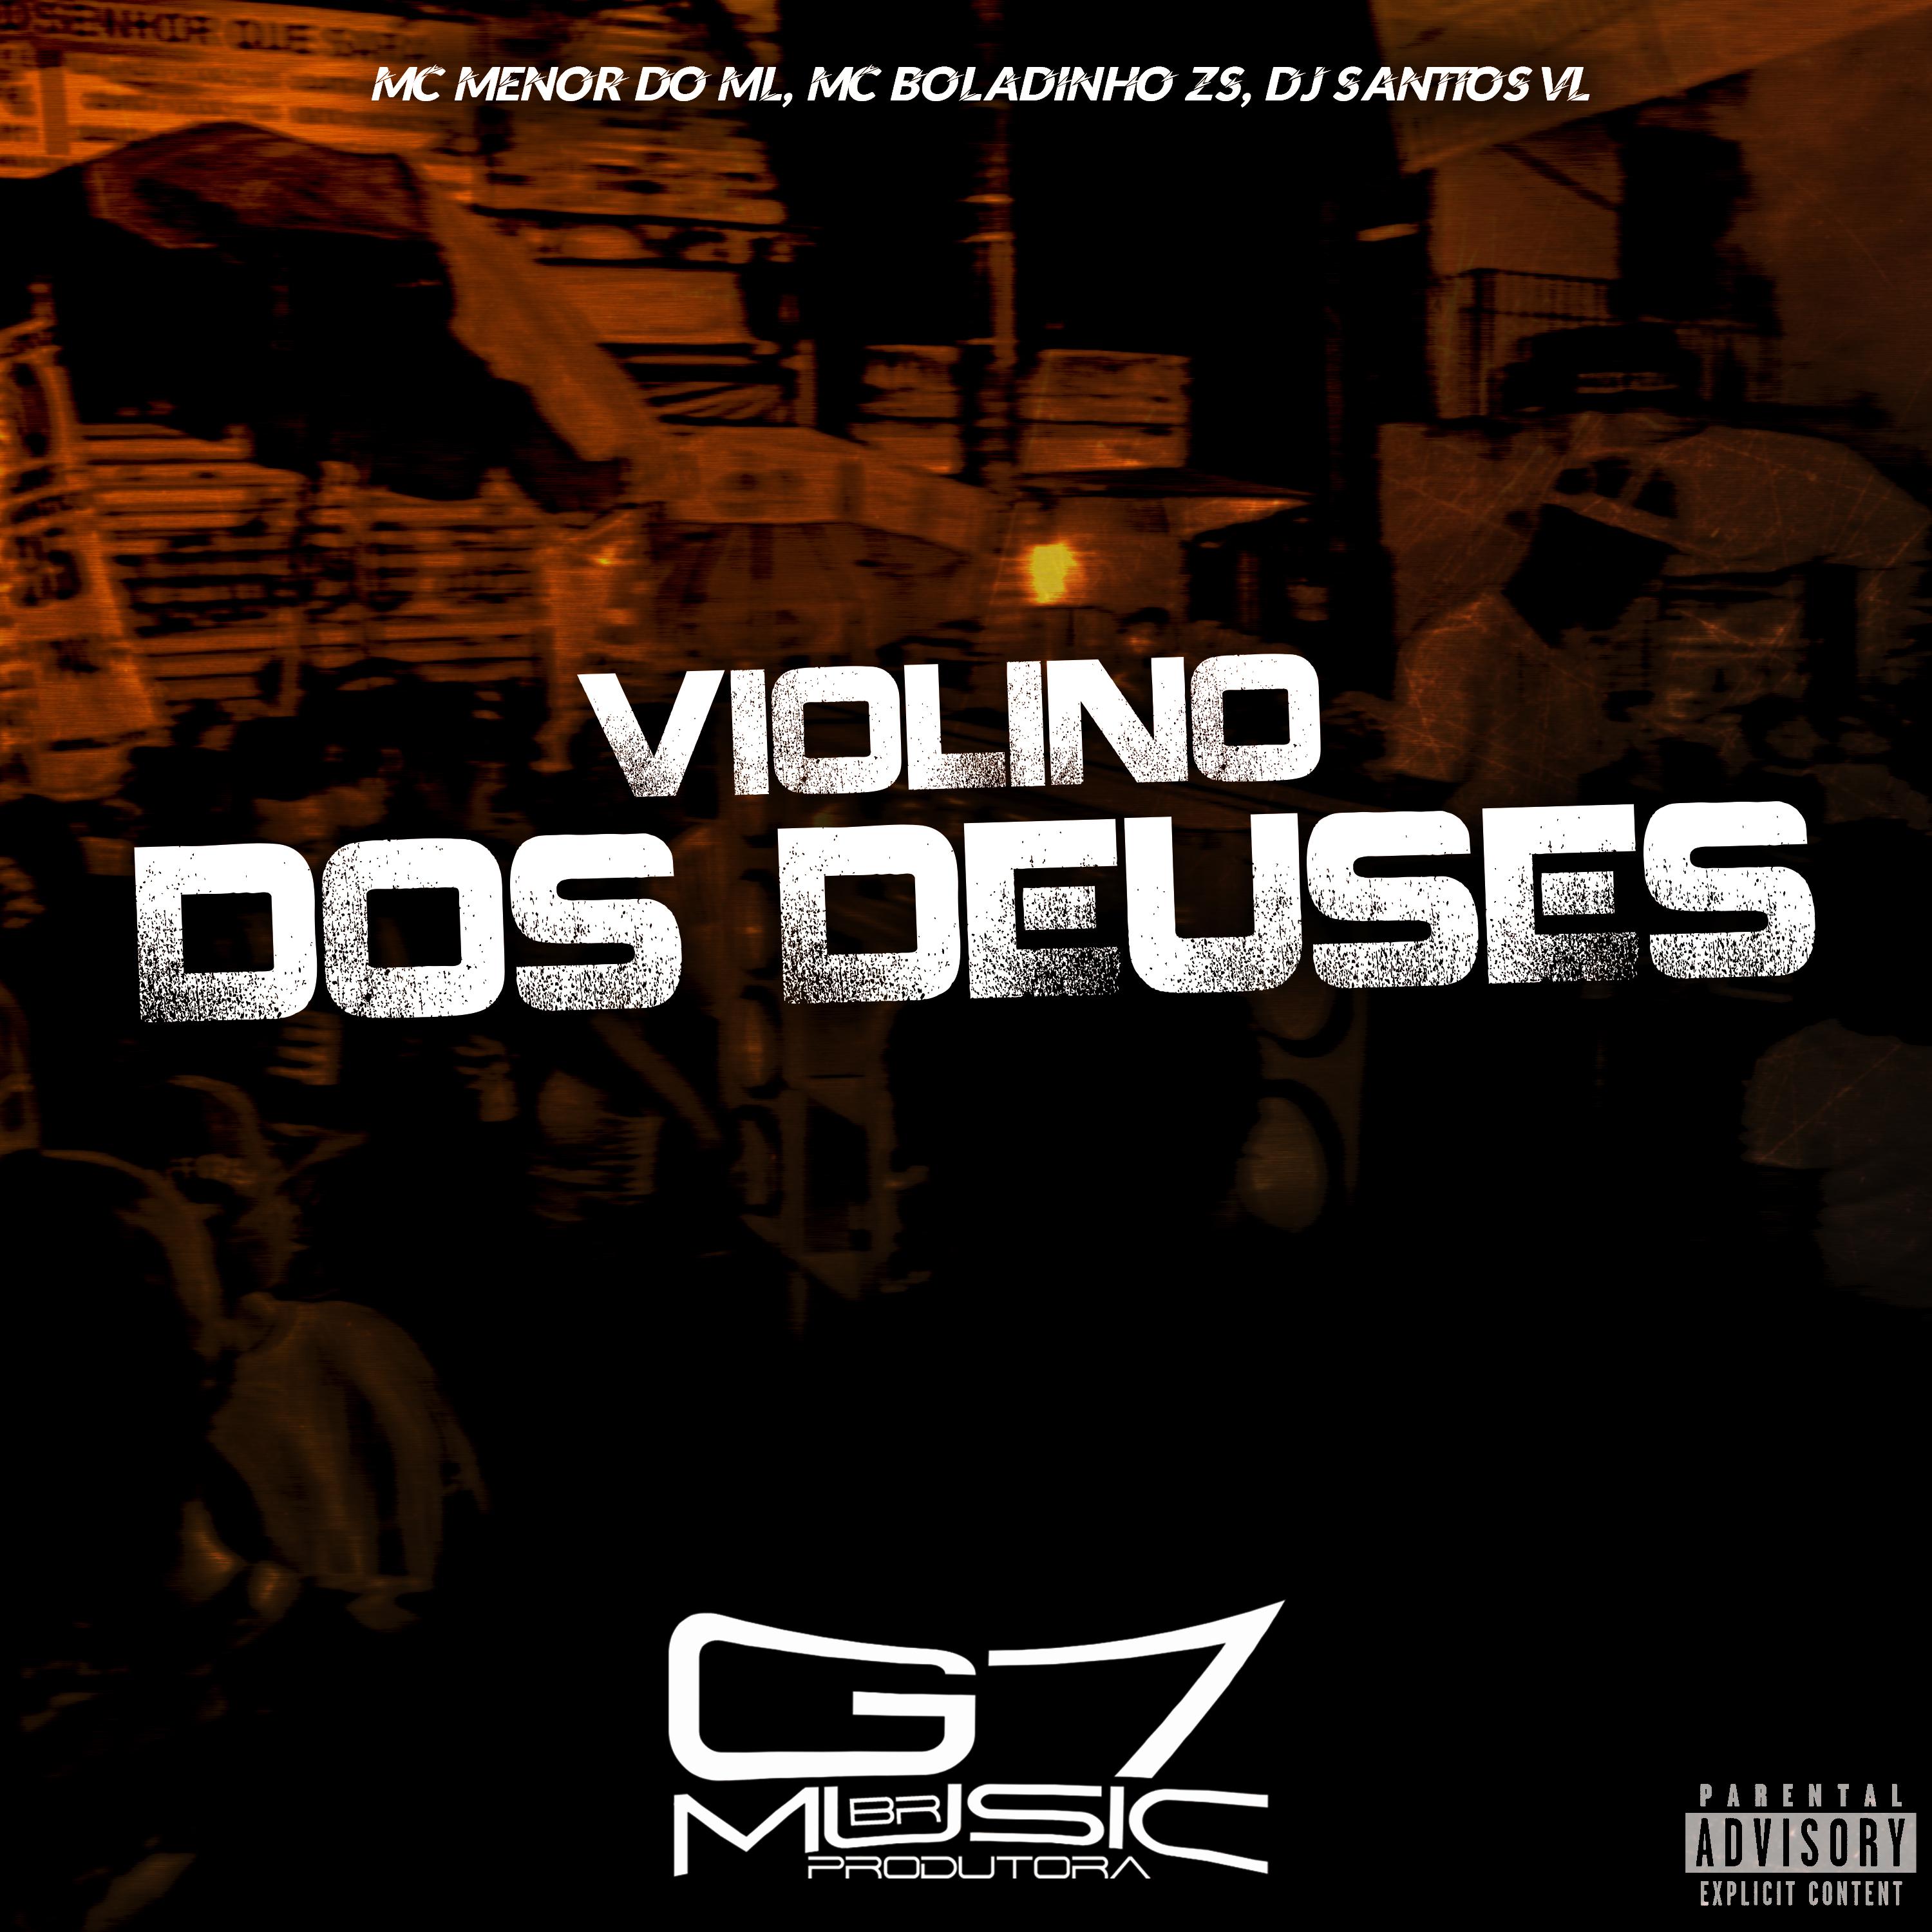 Постер альбома Violino dos Deuses